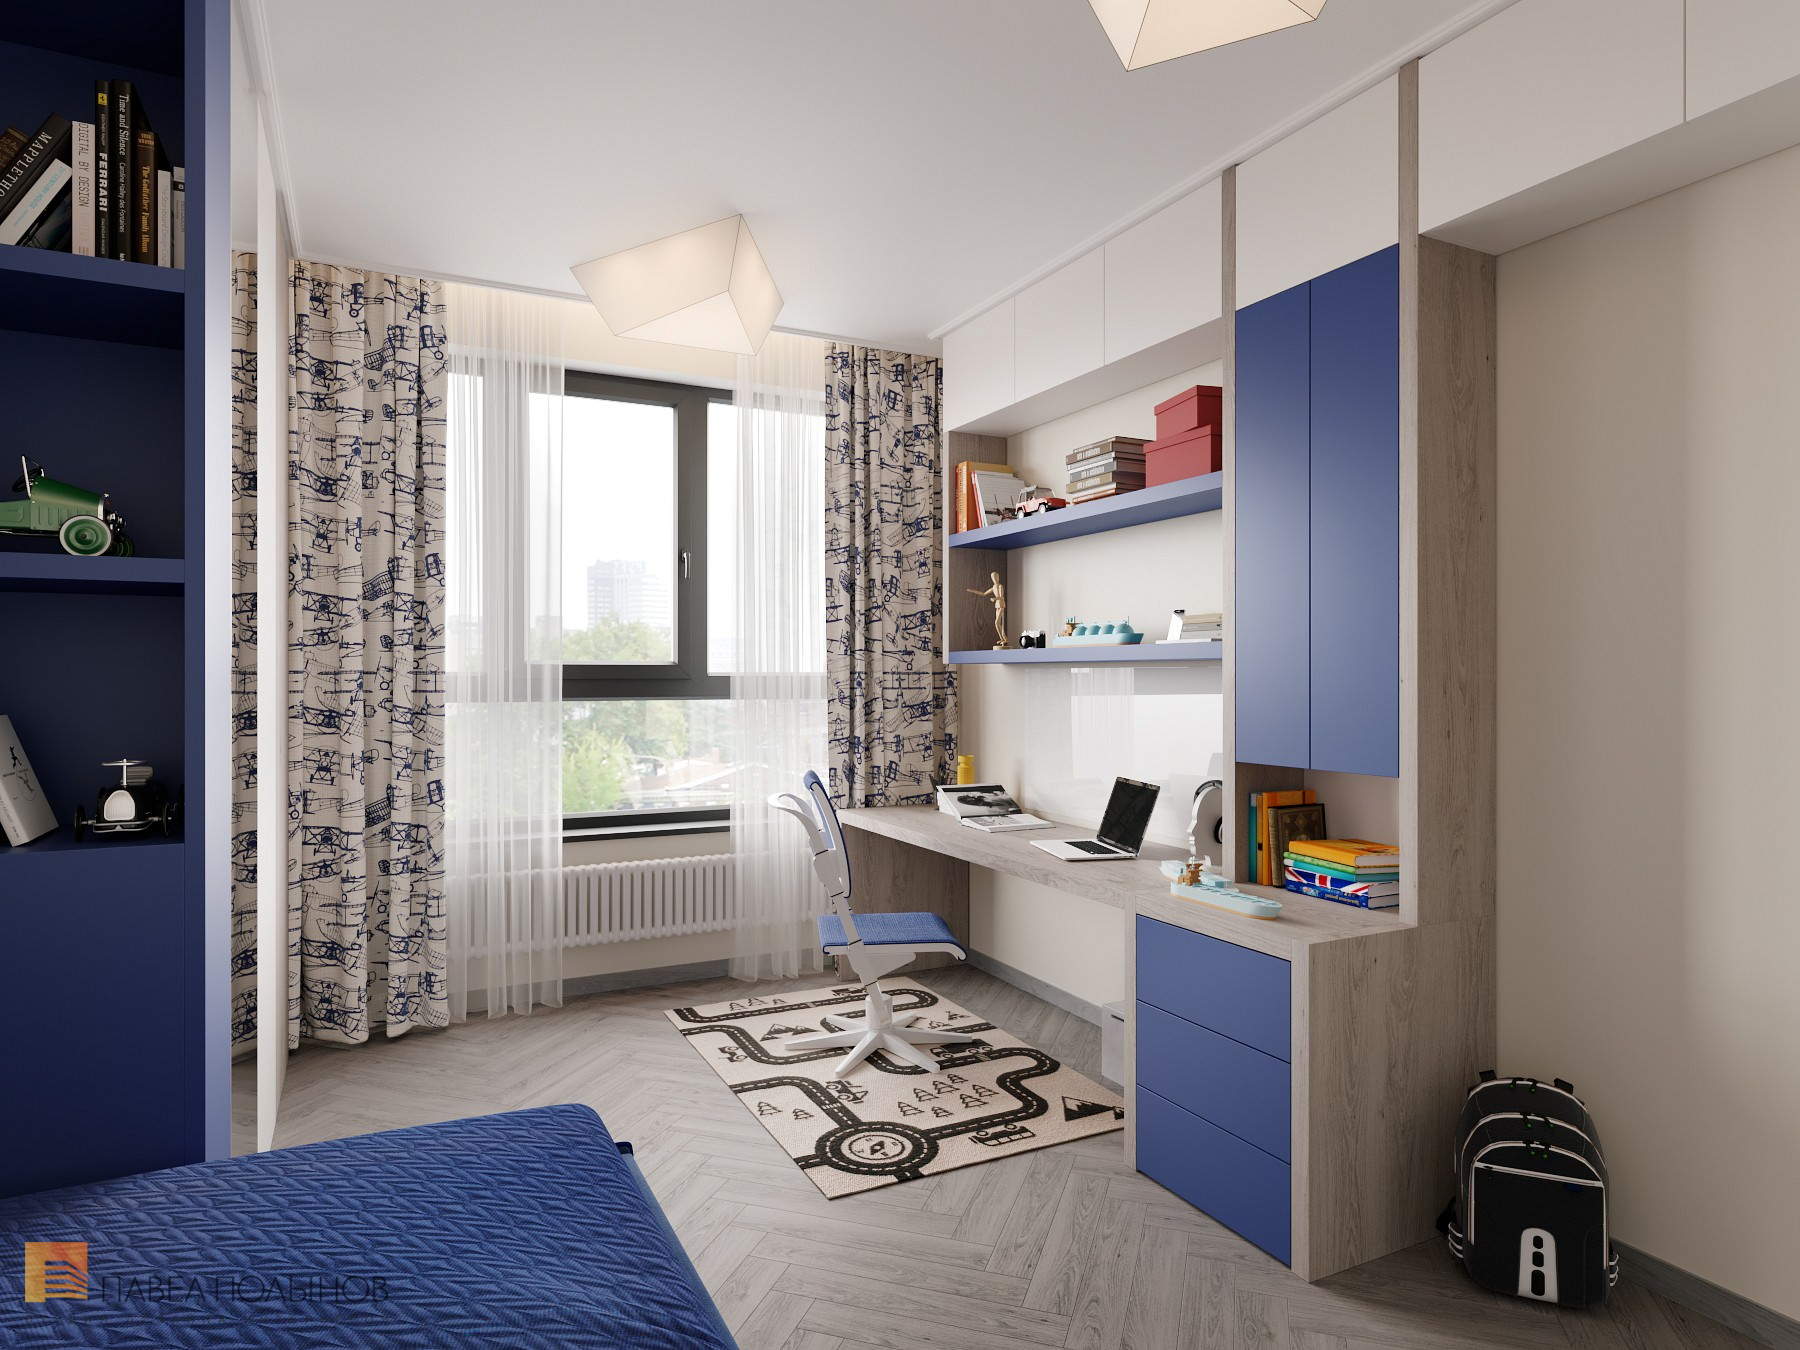 Фото дизайн детской комнаты для мальчика из проекта «Интерьер квартиры в скандинавском стиле, ЖК «Silver», 146 кв.м.»